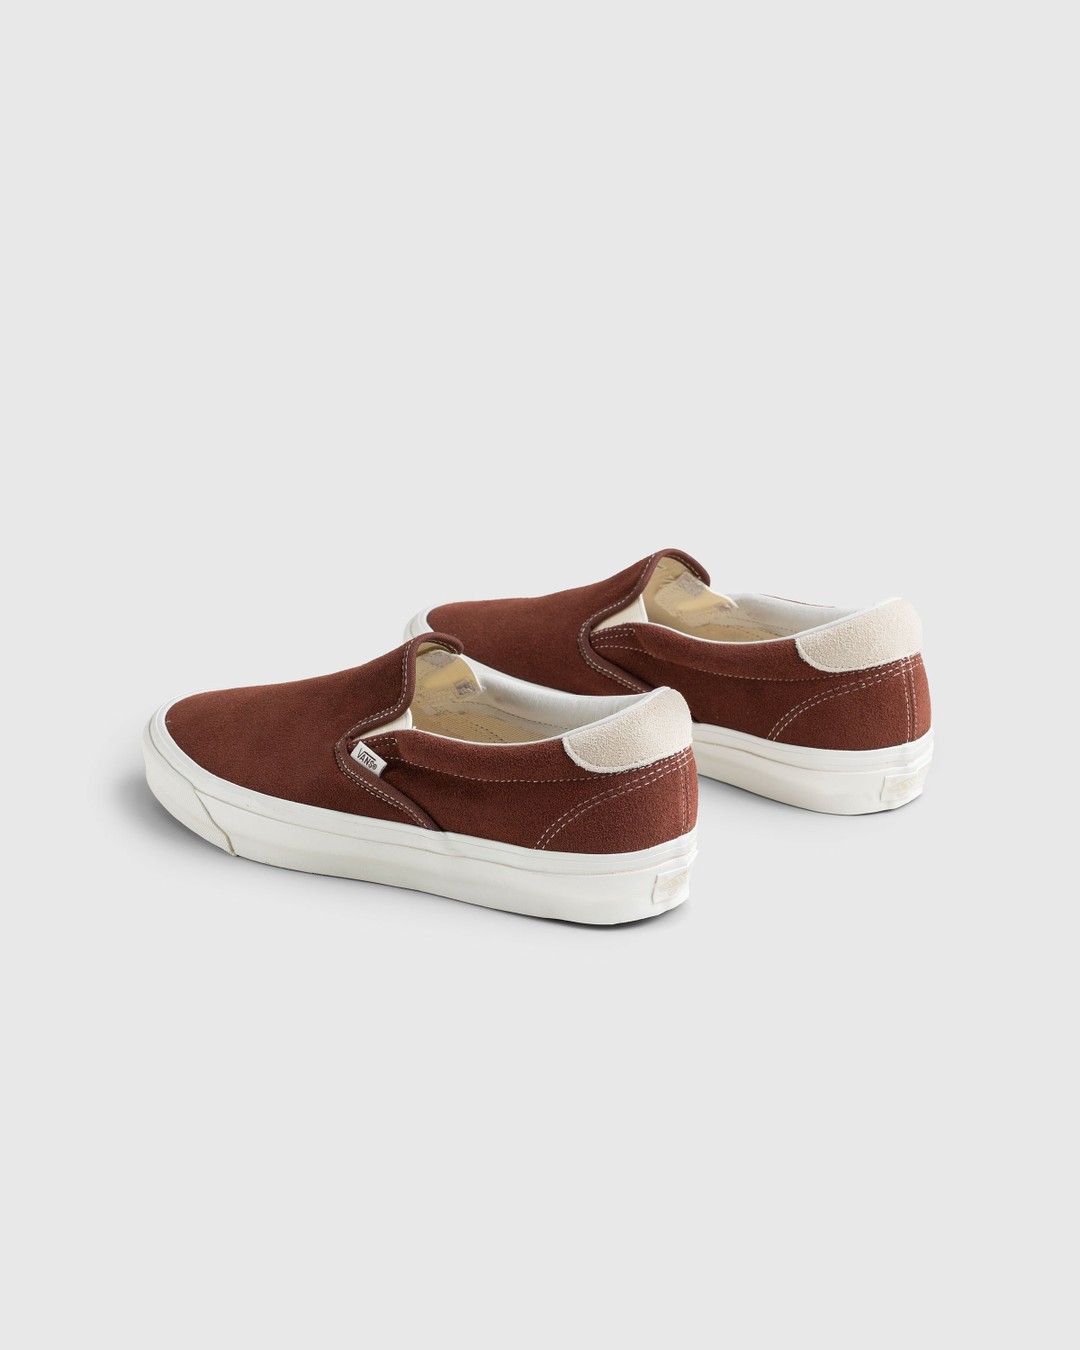 Vans – OG Slip-On 59 LX Suede Brown - Sneakers - Brown - Image 4